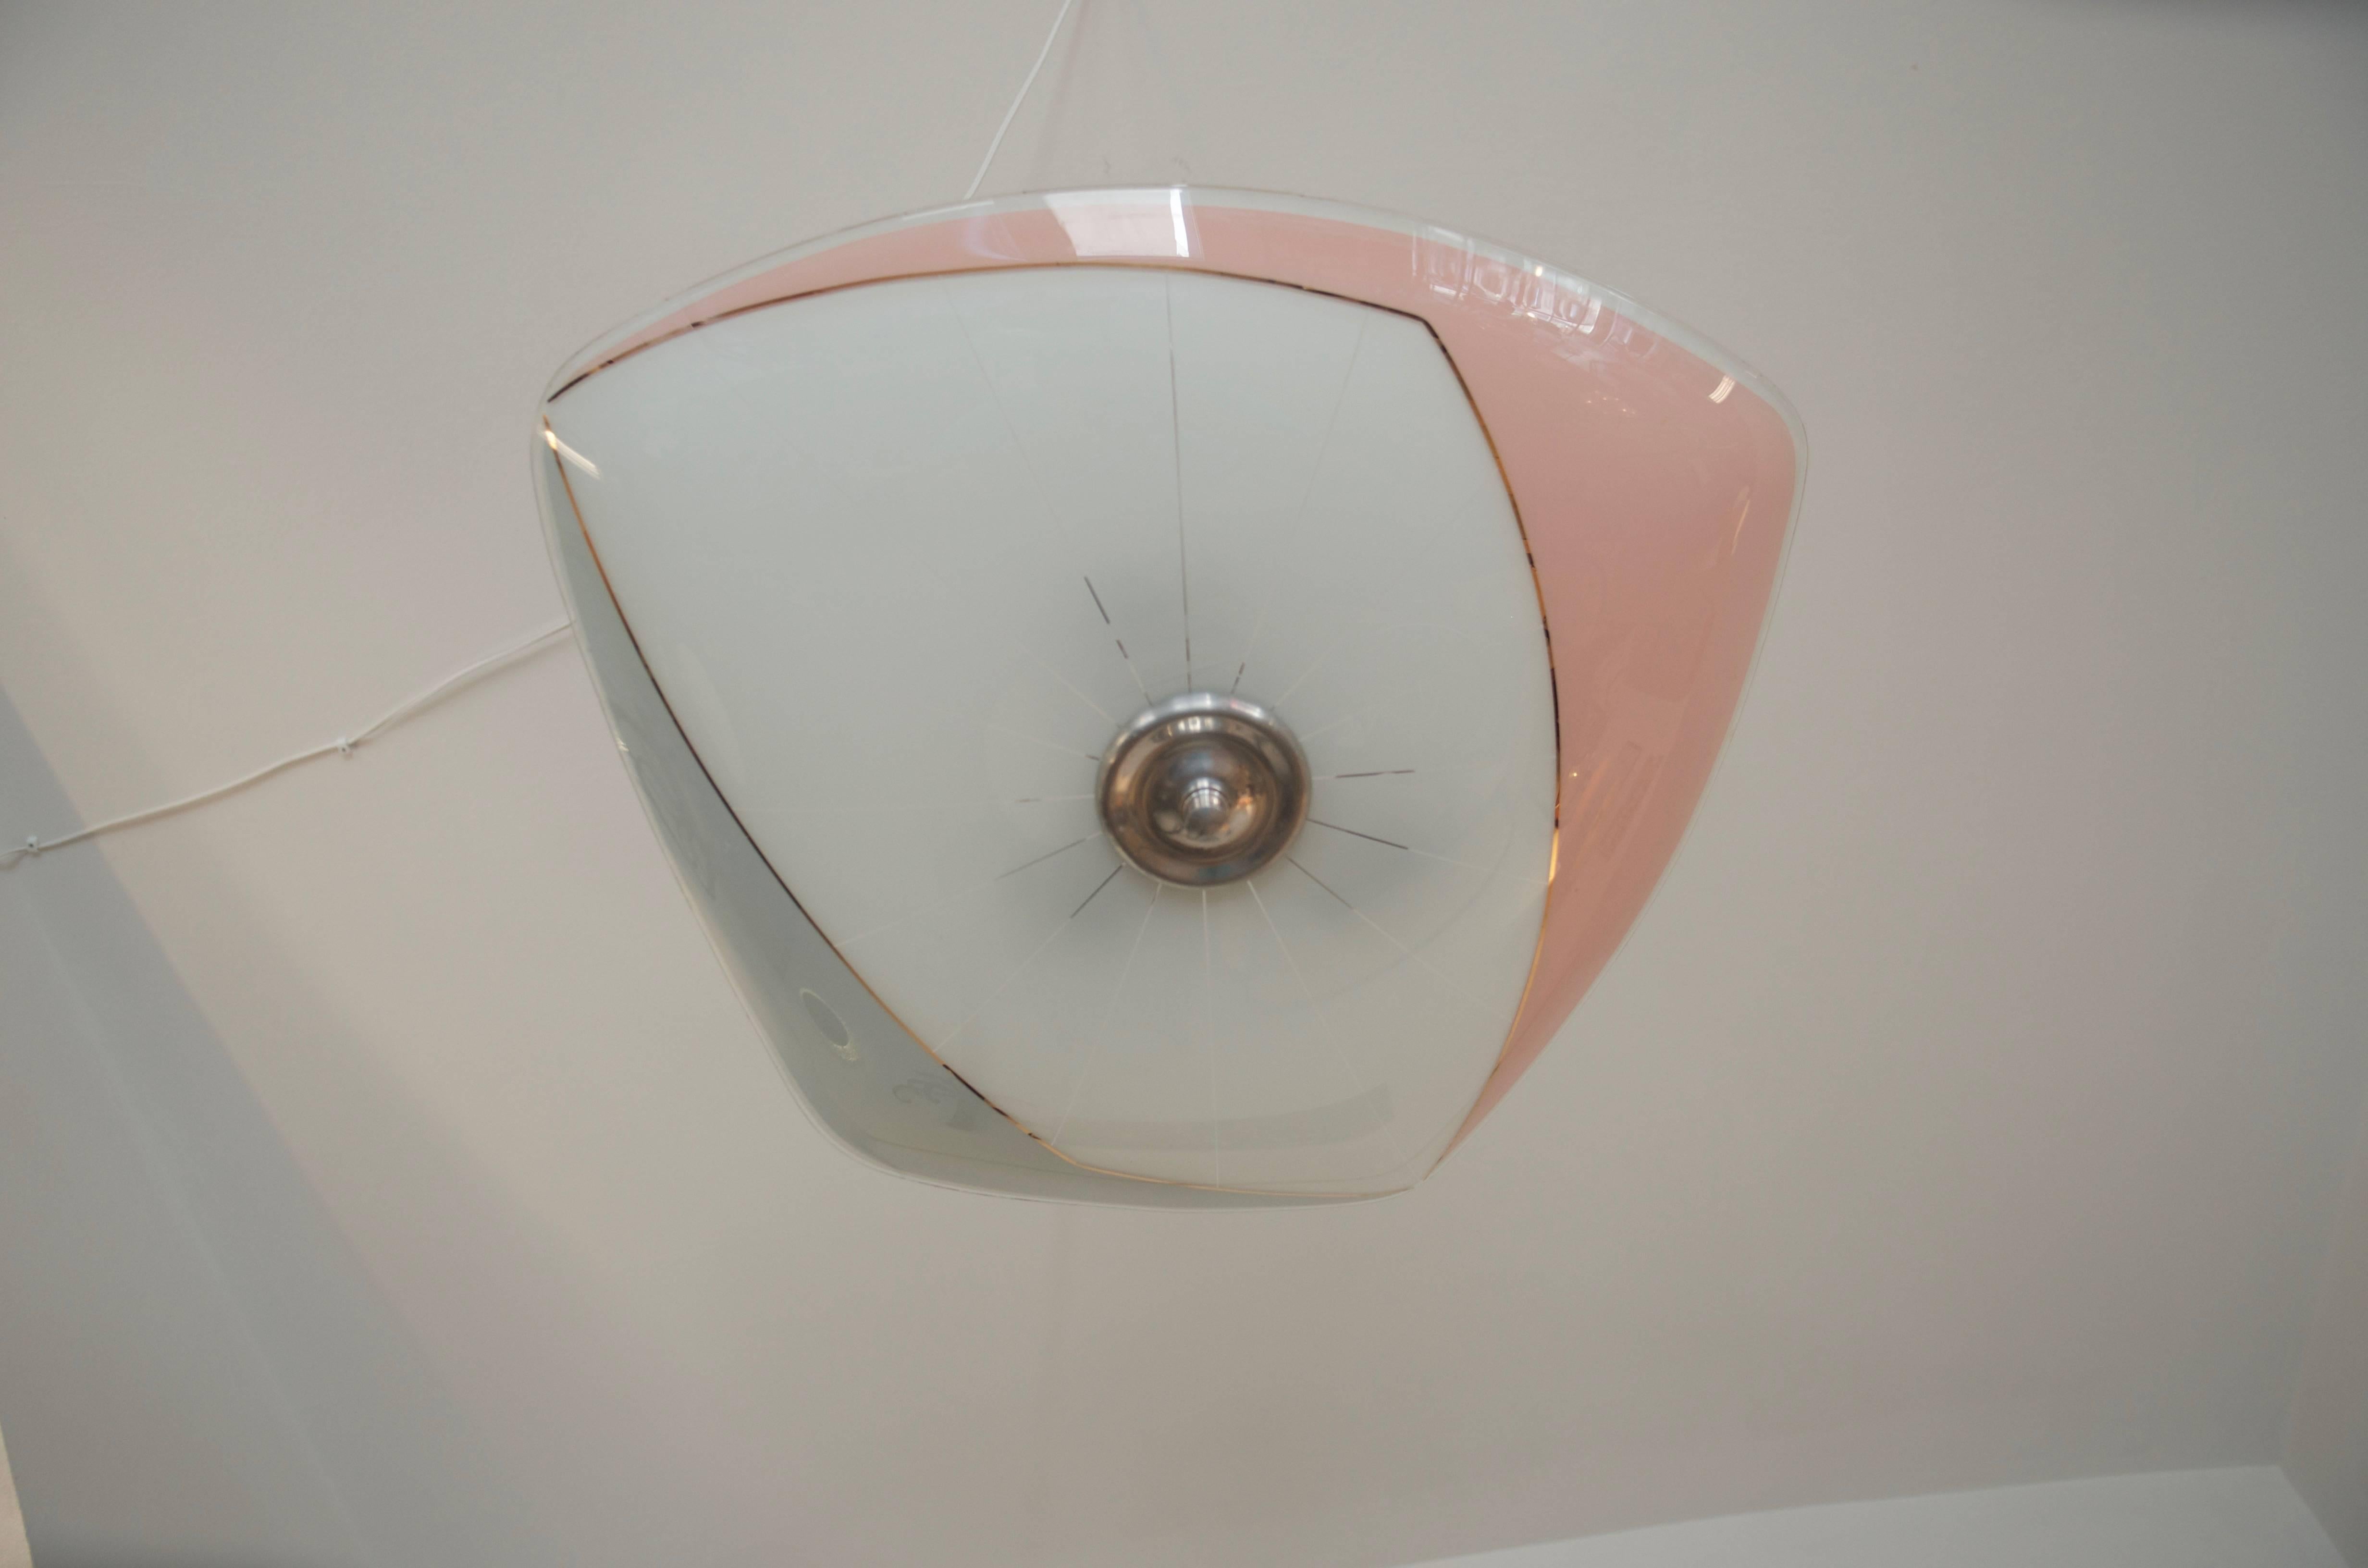 Dieser Anhänger wurde als Ausstellungsstück für den tschechoslowakischen Pavillon auf der Weltausstellung in Brüssel 1958 entworfen.
Der Schirm ist in bemerkenswertem Zustand ohne Kratzer, Risse oder Chips, die Aluminium-Hängeleuchte Hardware ist